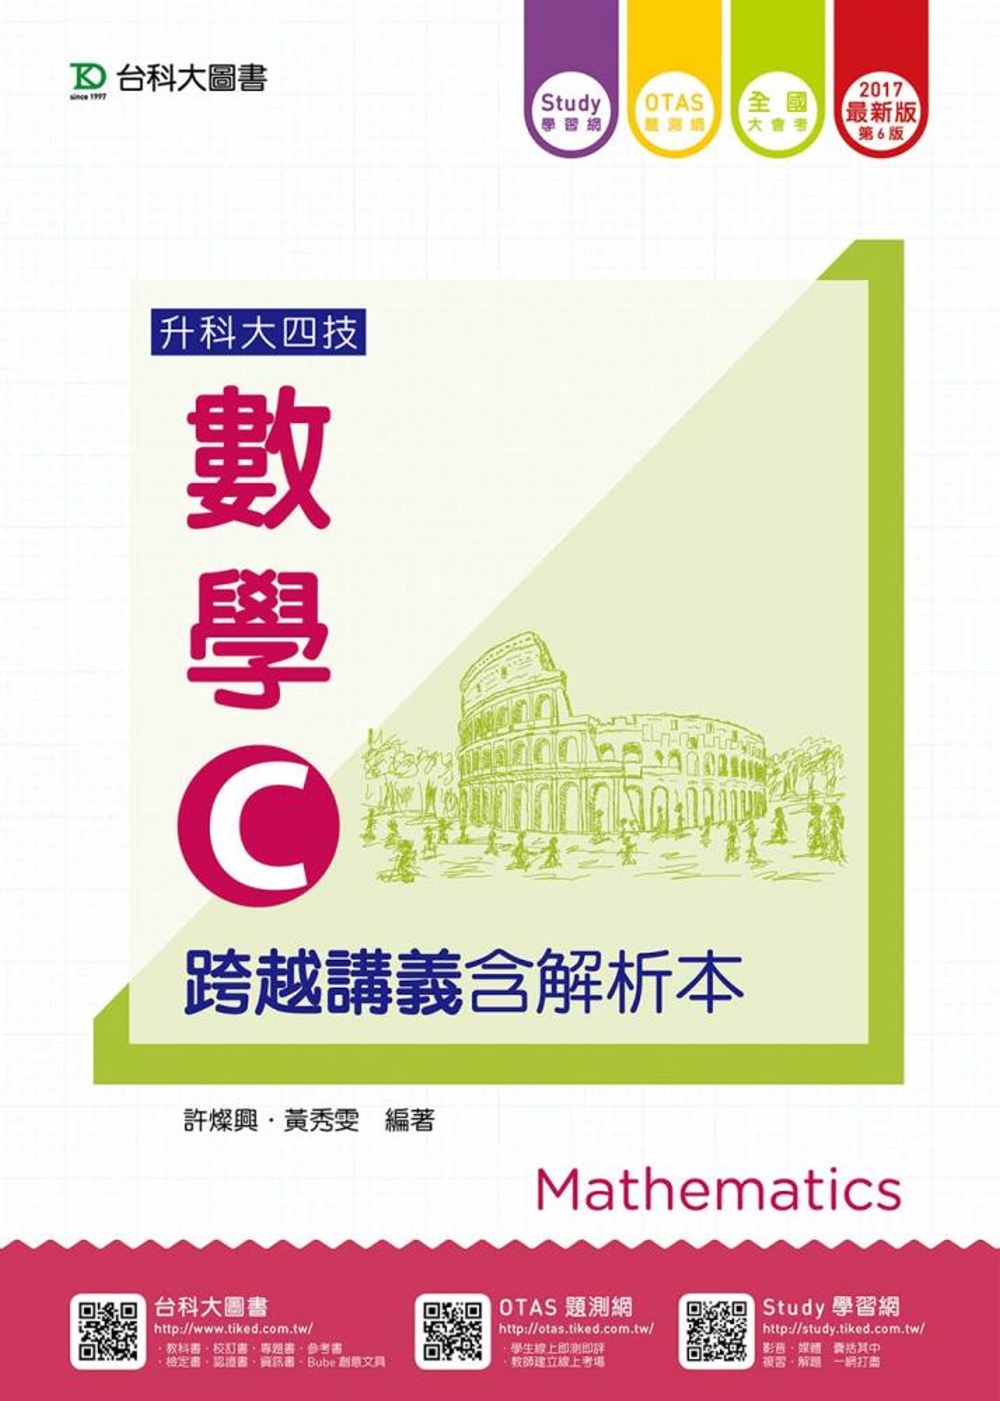 升科大四技數學 C 跨越講義含解析本 - 2017最新版(第六版) - 附贈OTAS題測系統